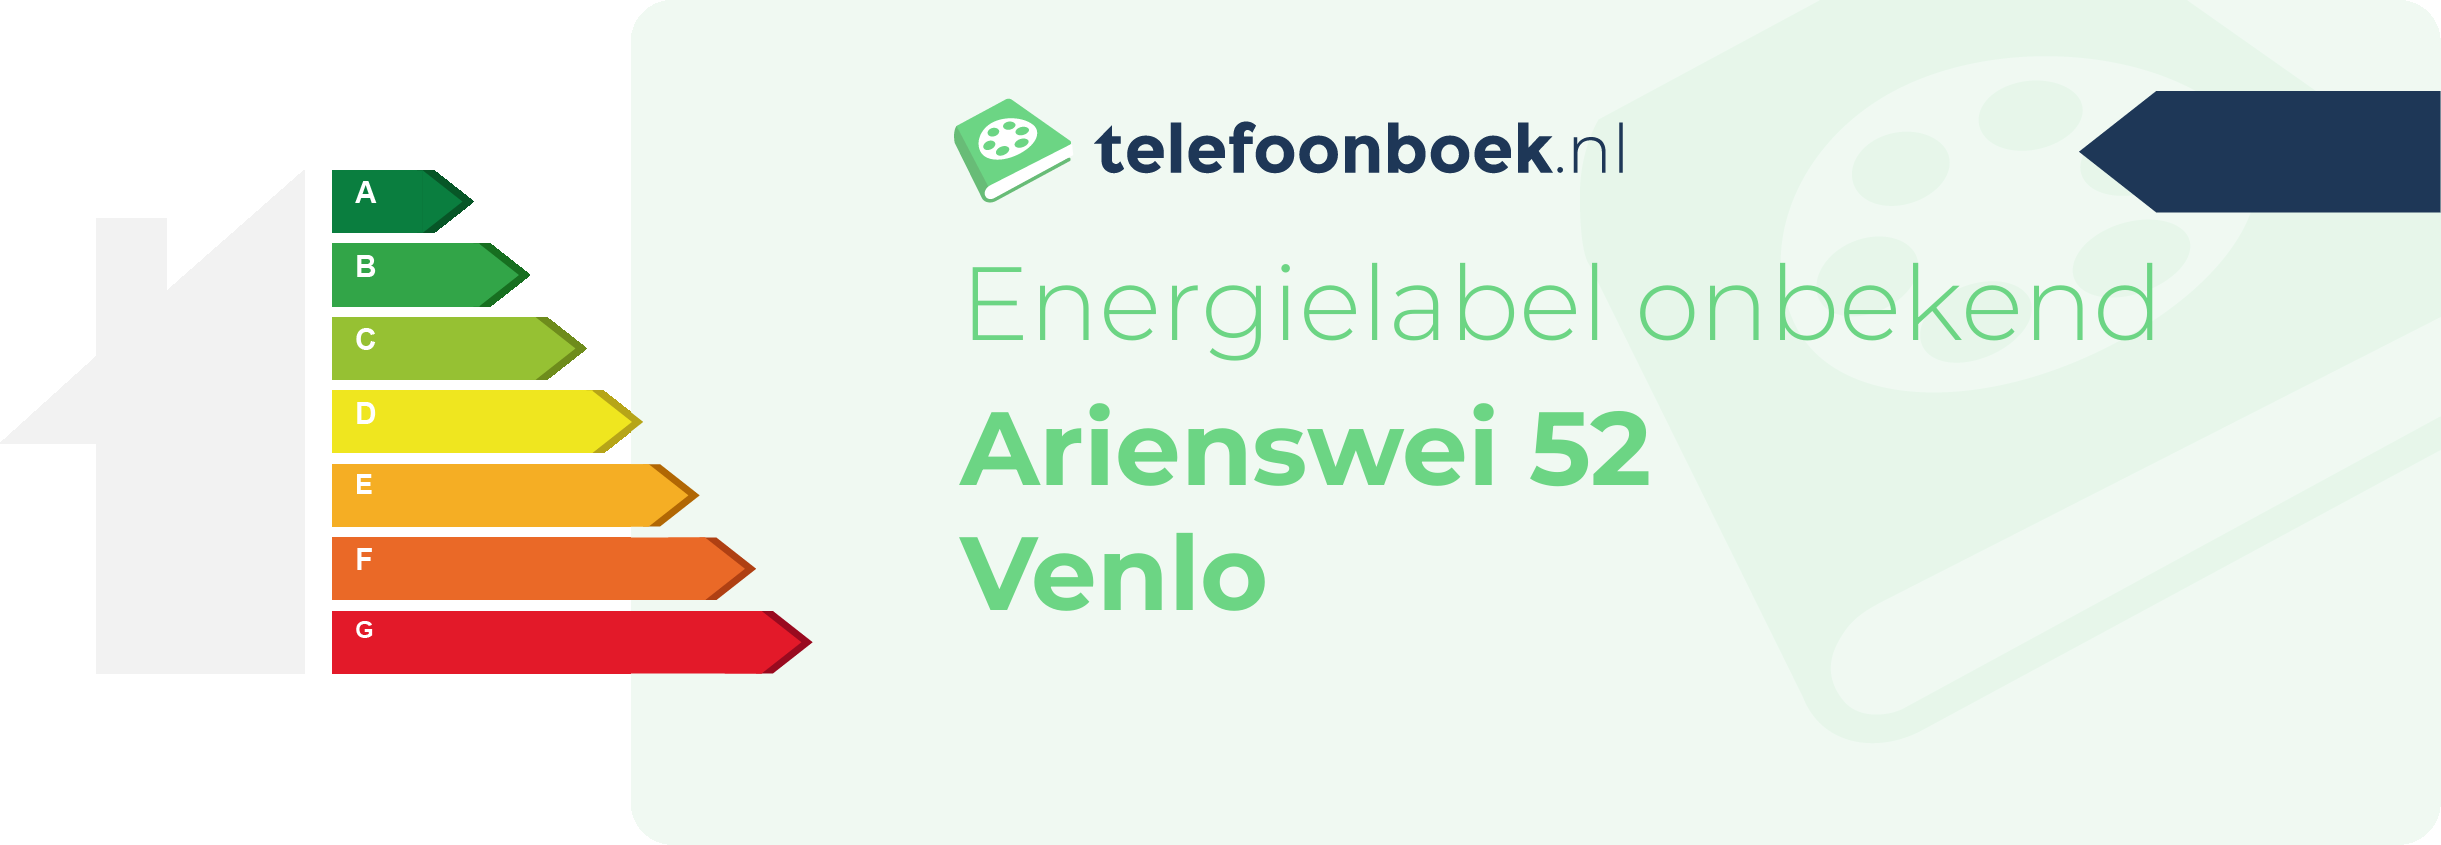 Energielabel Arienswei 52 Venlo